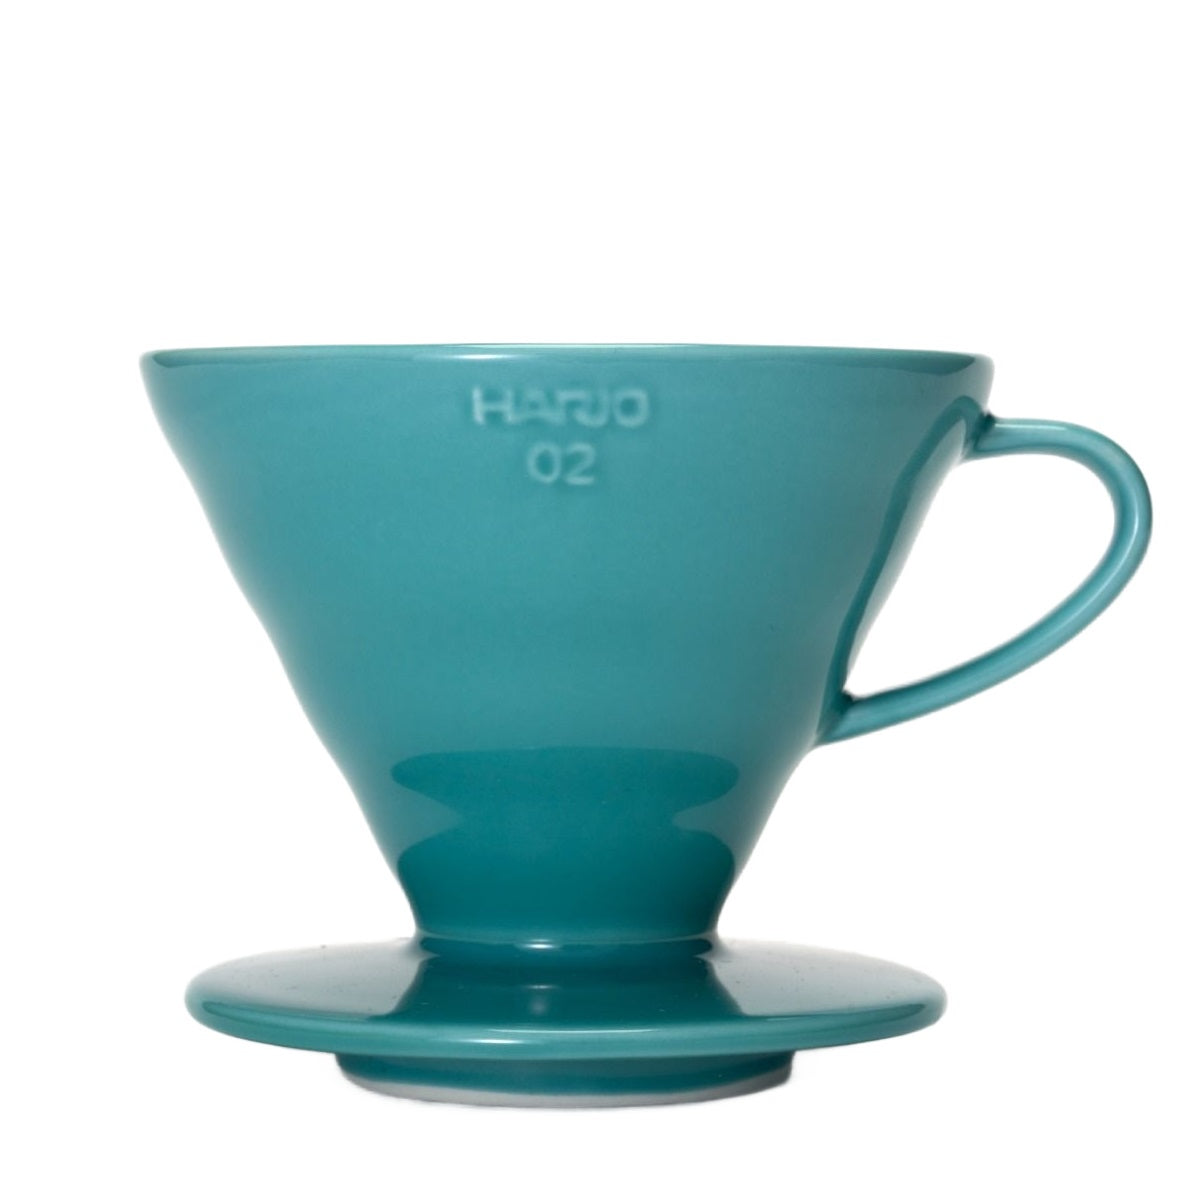 Hario V60-02 Ceramic